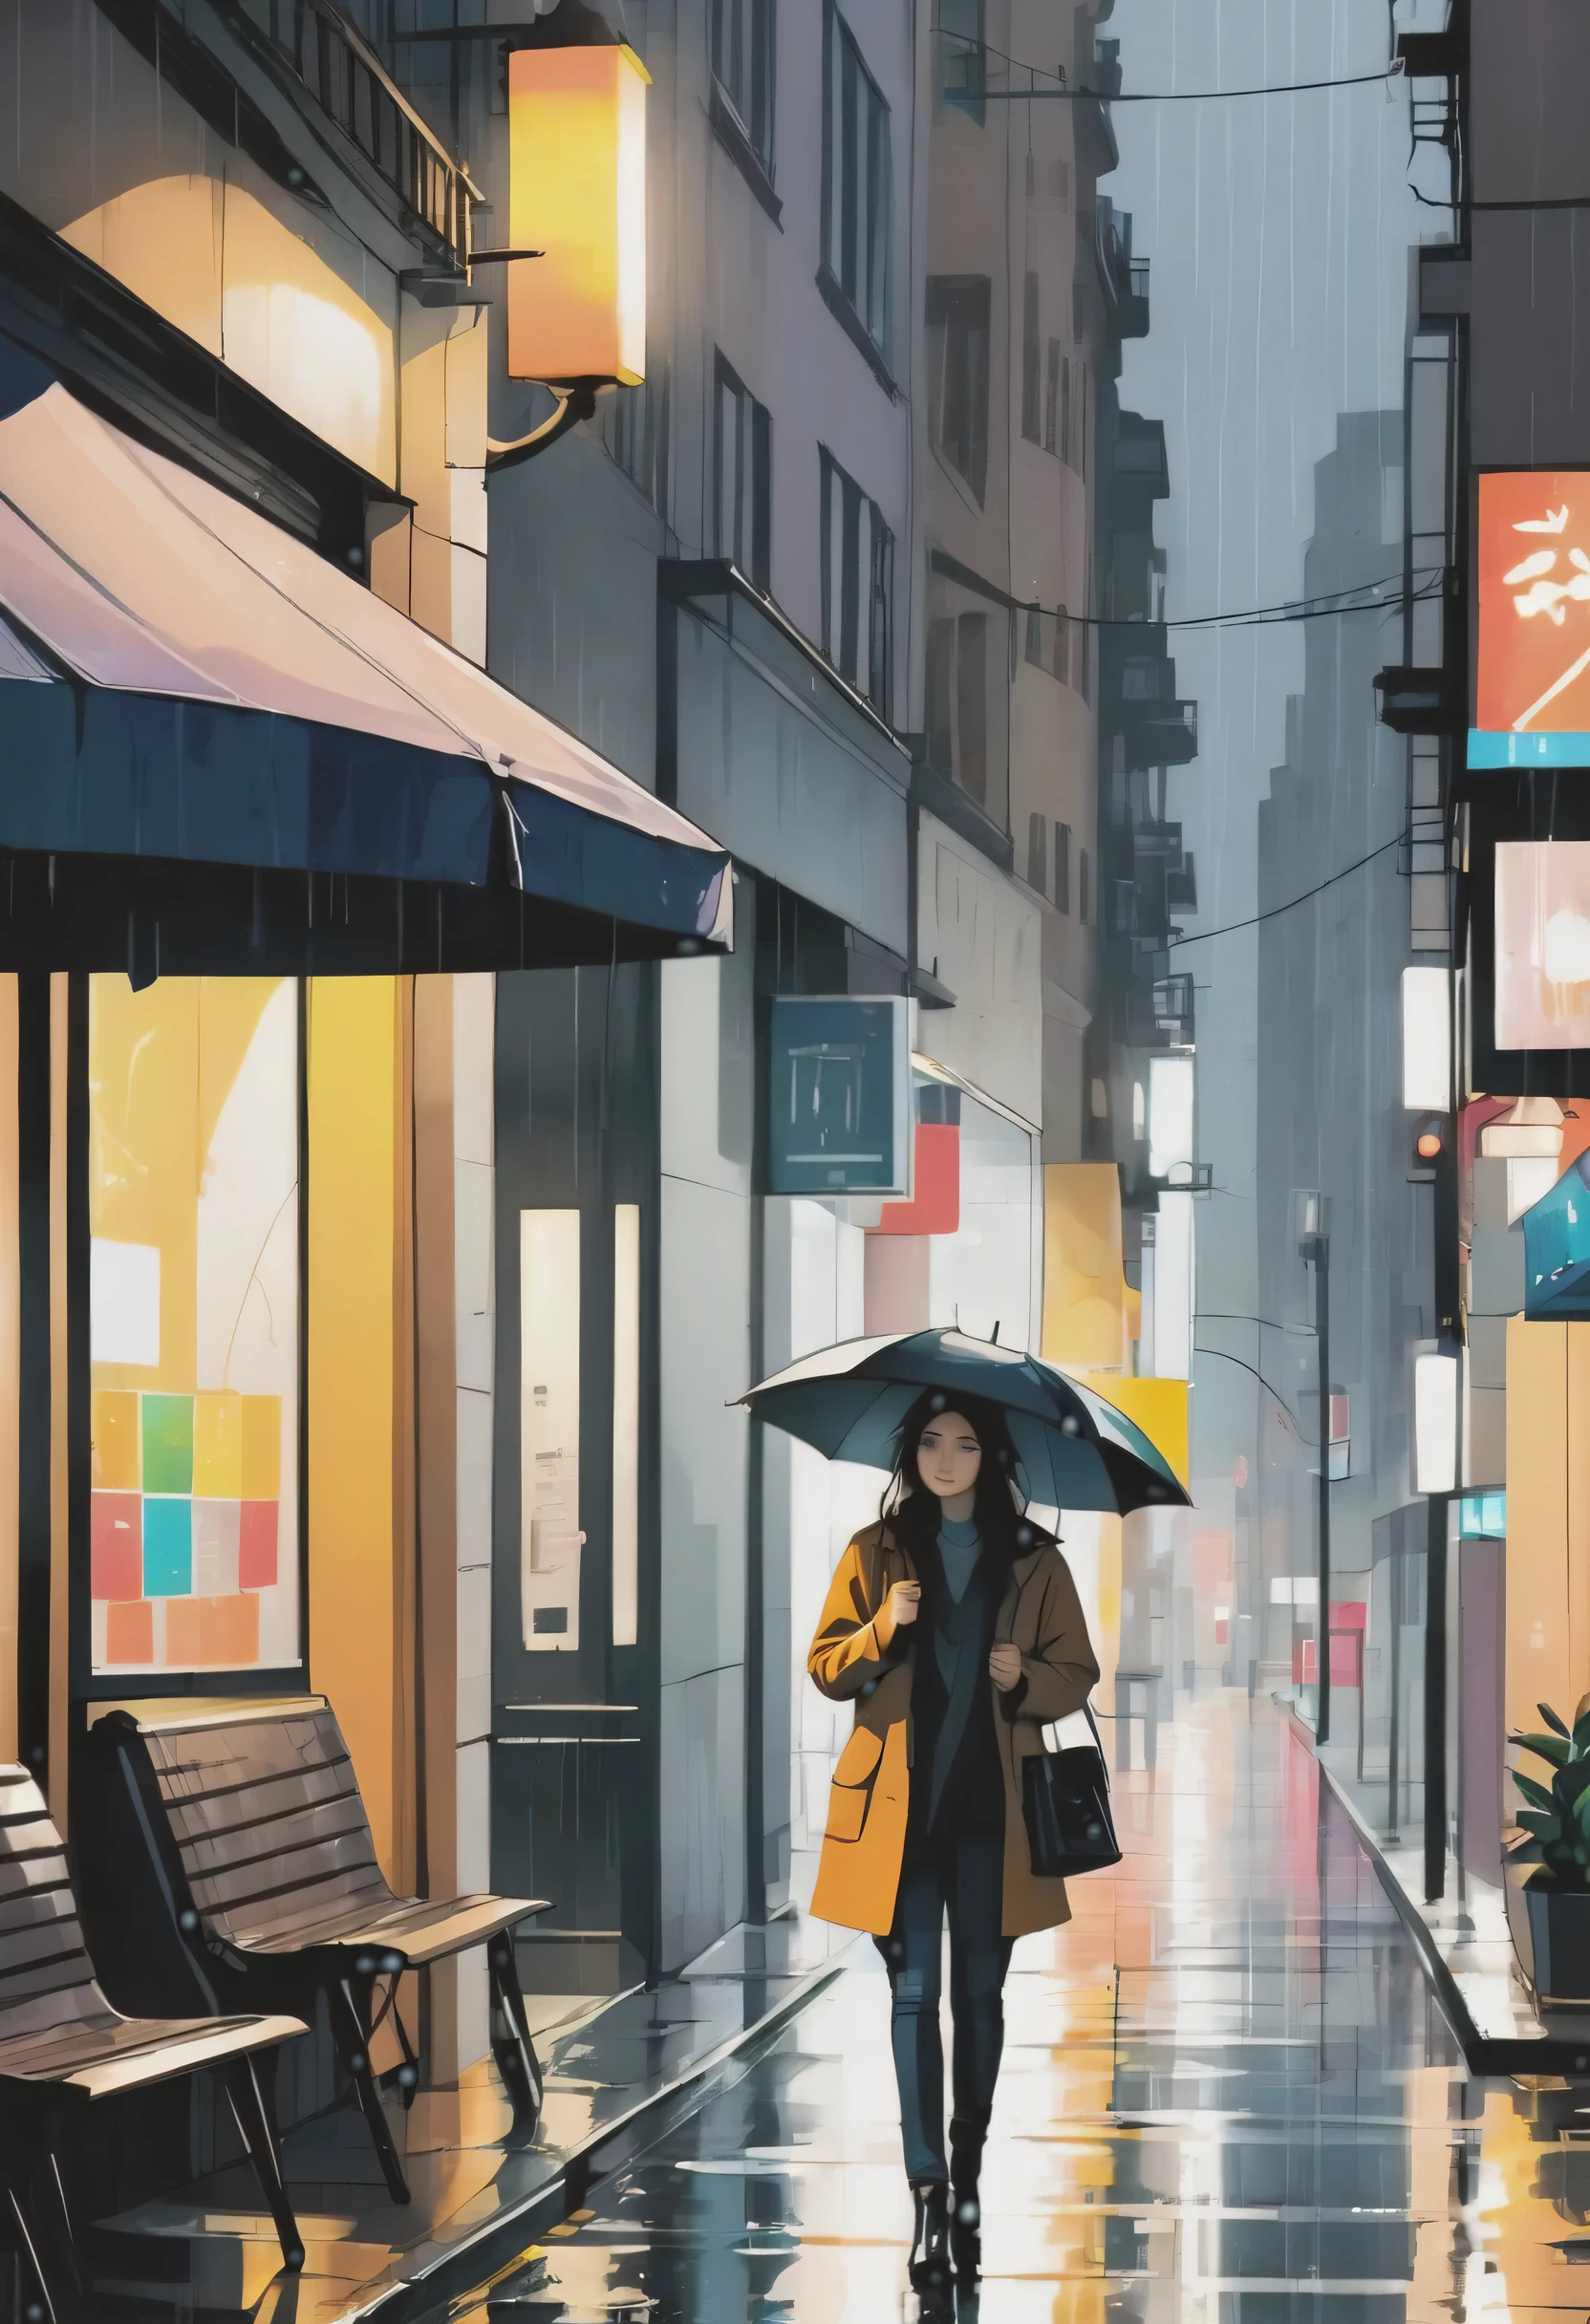 ilustração em aquarela em estilo de arte conceitual pós-moderna, com três cores calmas e brilhantes, traços finos sem contorno, salpicos mínimos, retratando um final de tarde escuro e chuvoso na cidade, onde uma linda garota com um guarda-chuva preto atravessa a calçada.